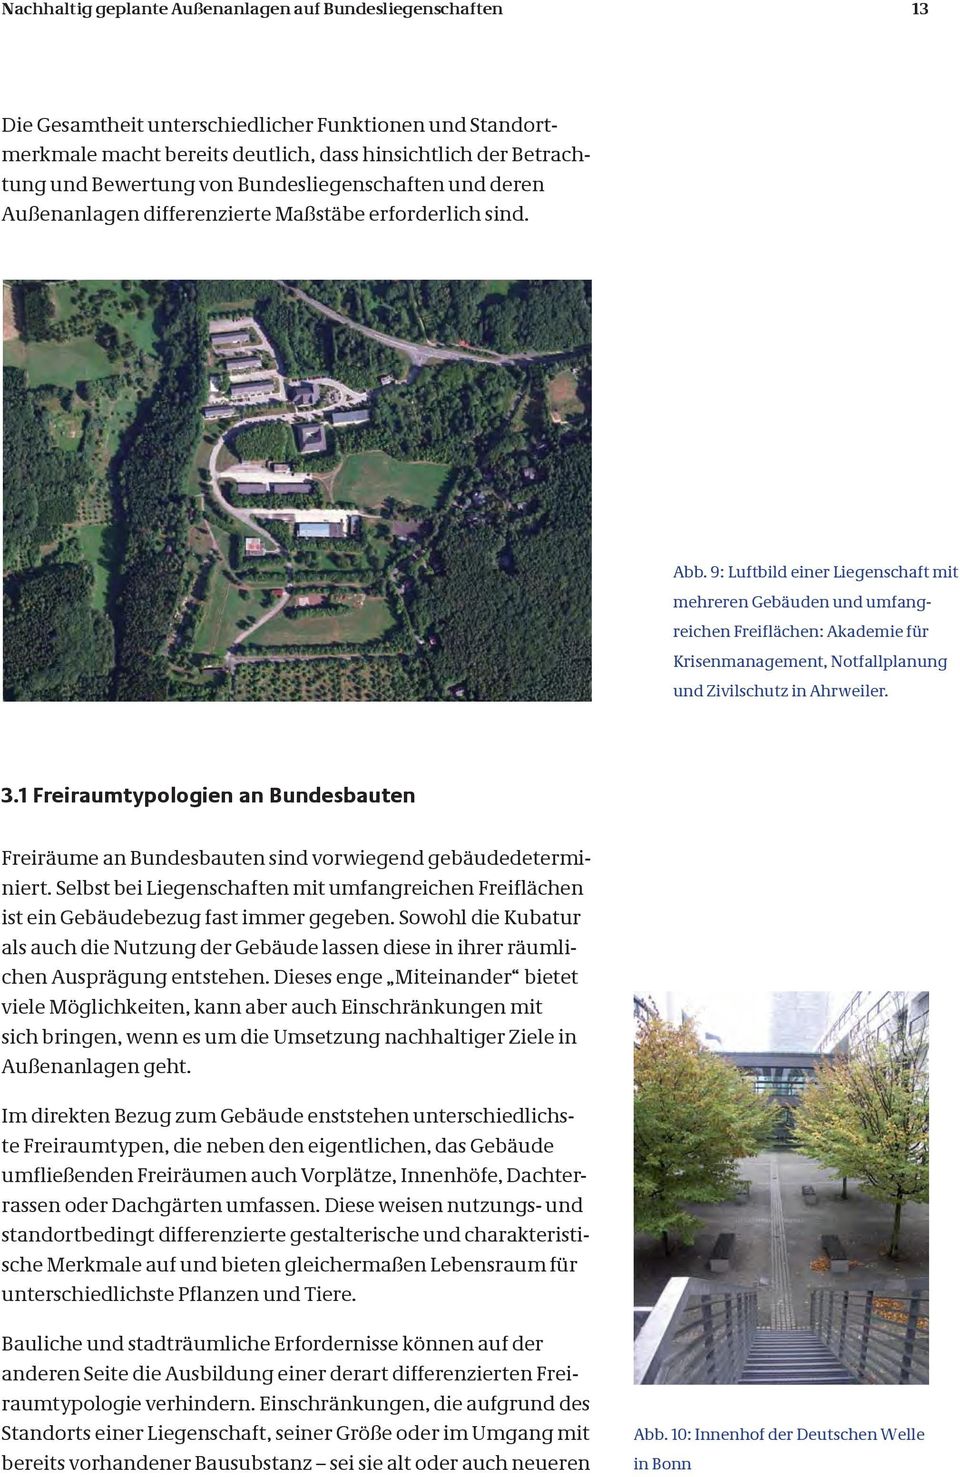 9: Luftbild einer Liegenschaft mit mehreren Gebäuden und umfangreichen Freiflächen: Akademie für Krisenmanagement, Notfallplanung und Zivilschutz in Ahrweiler. 3.